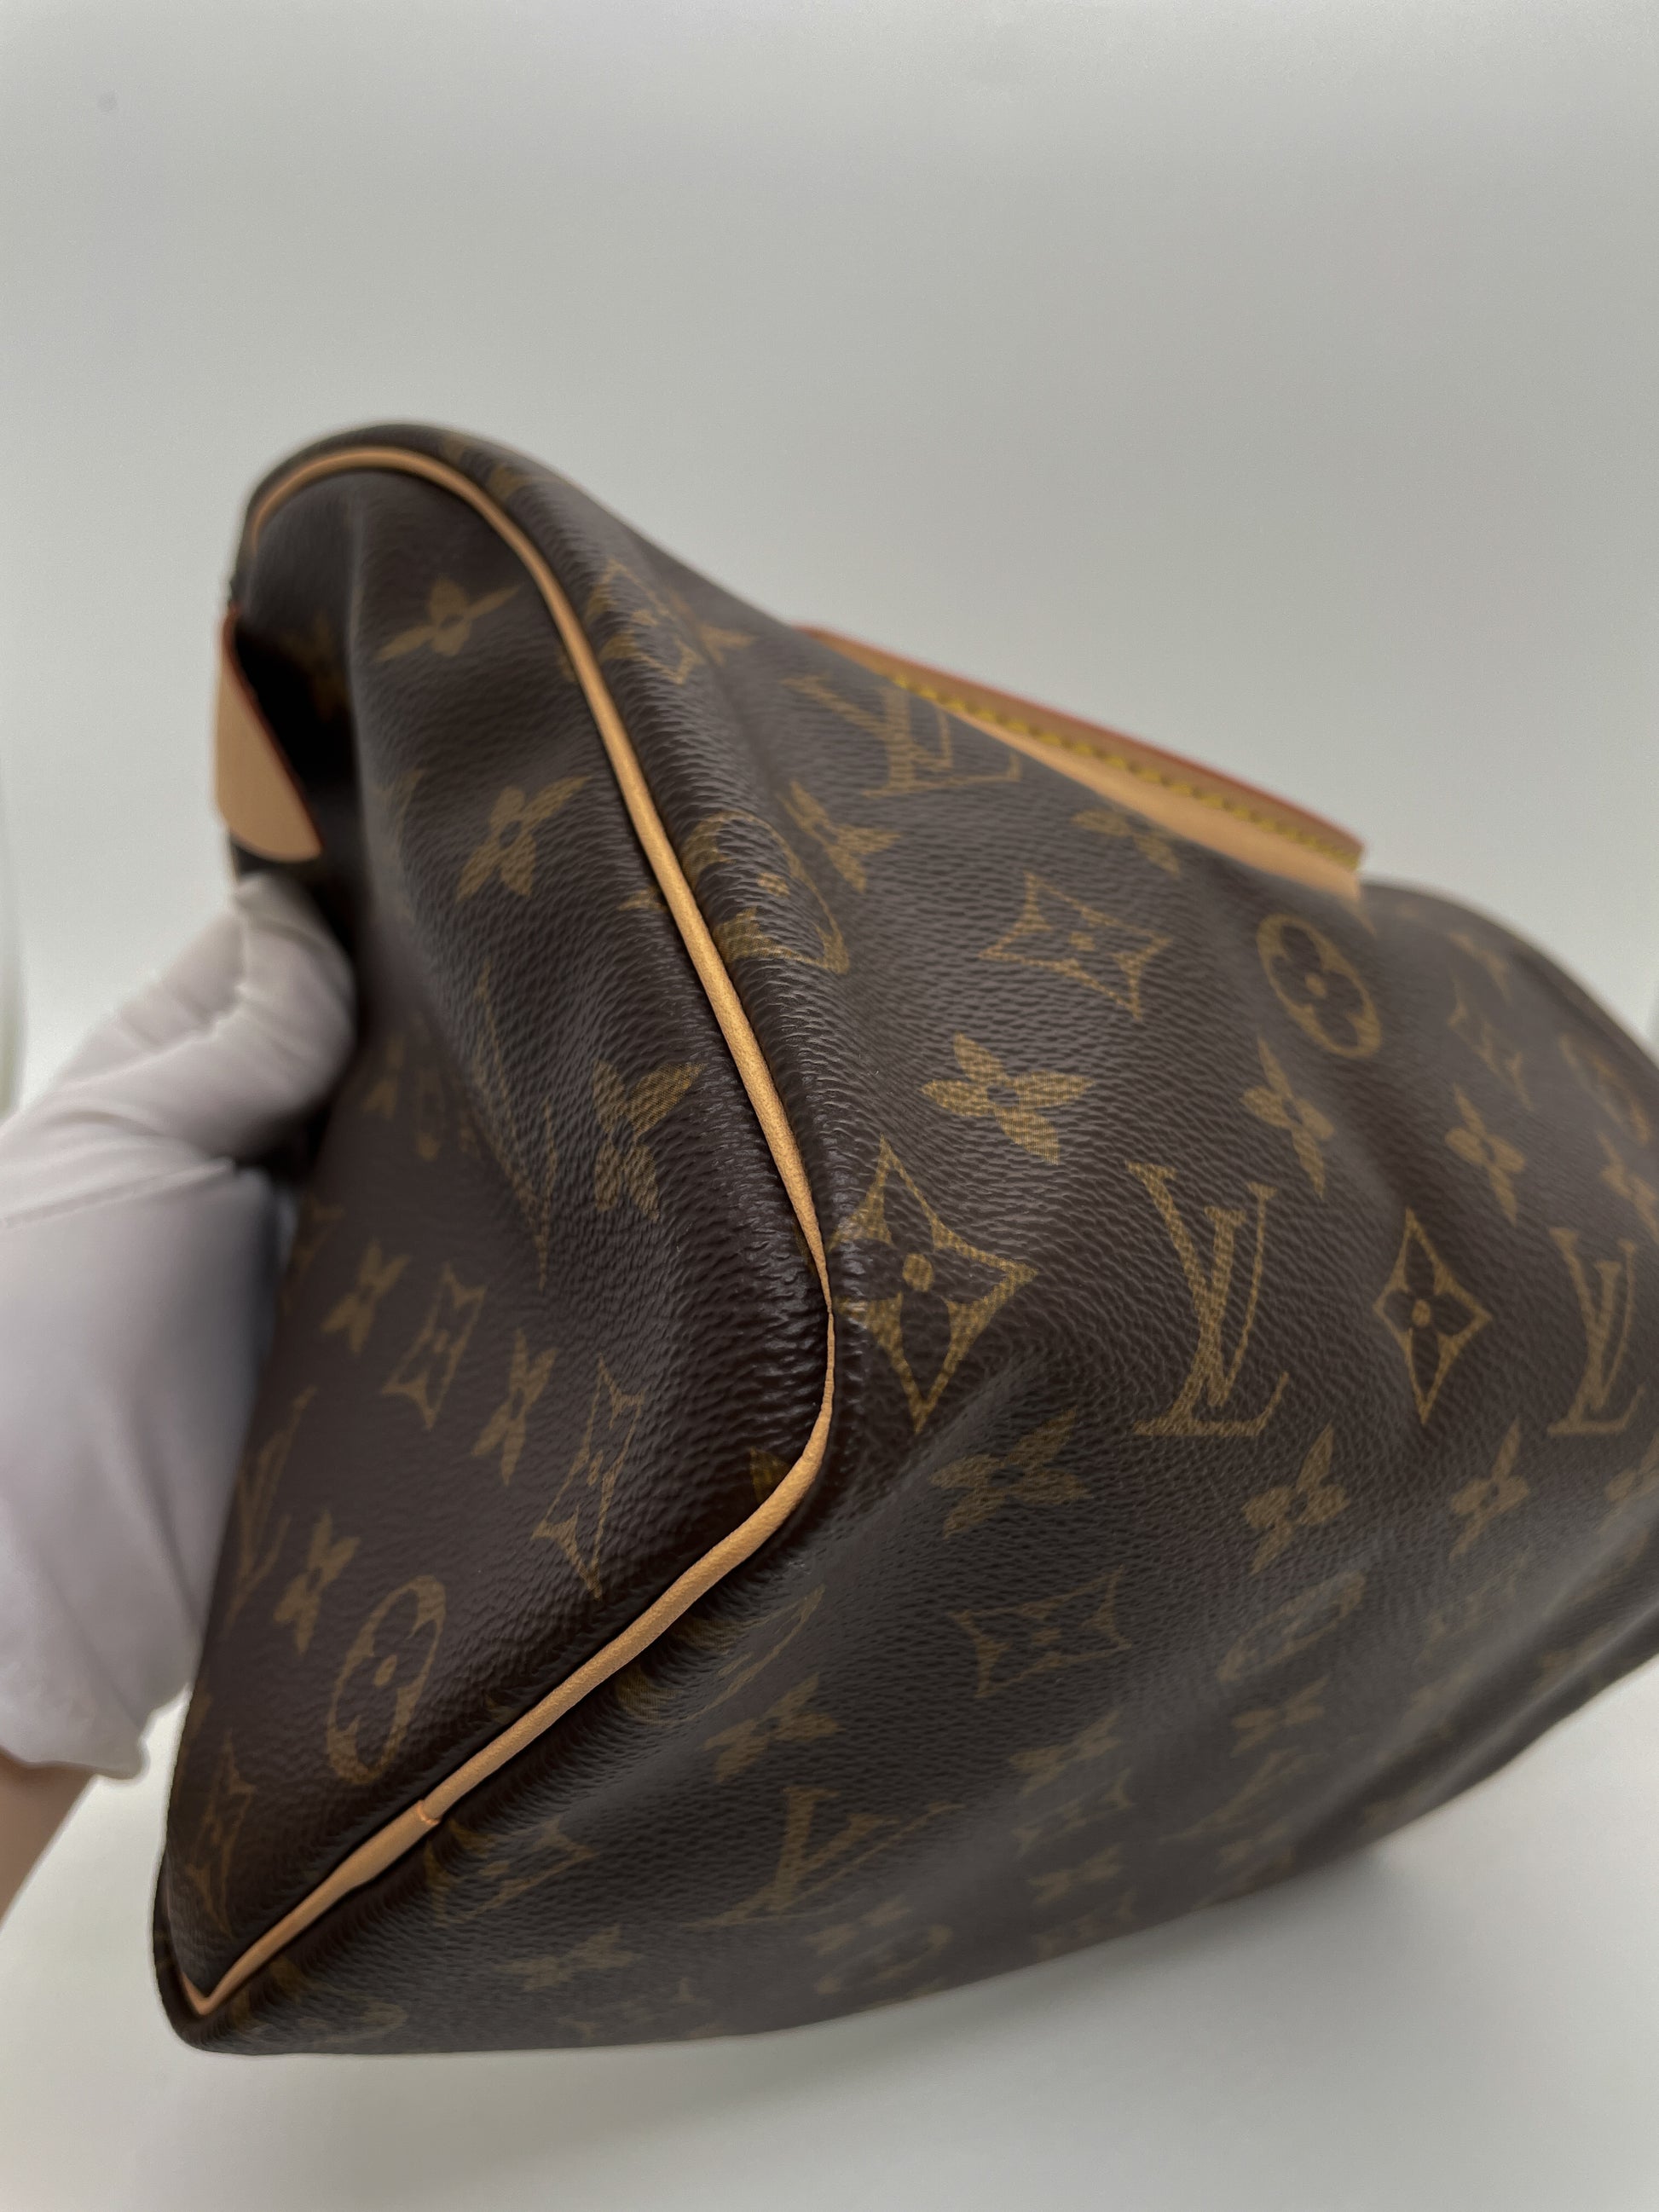 Louis Vuitton, Accessories, Authentic Louis Vuitton Dust Bag Speedy 25